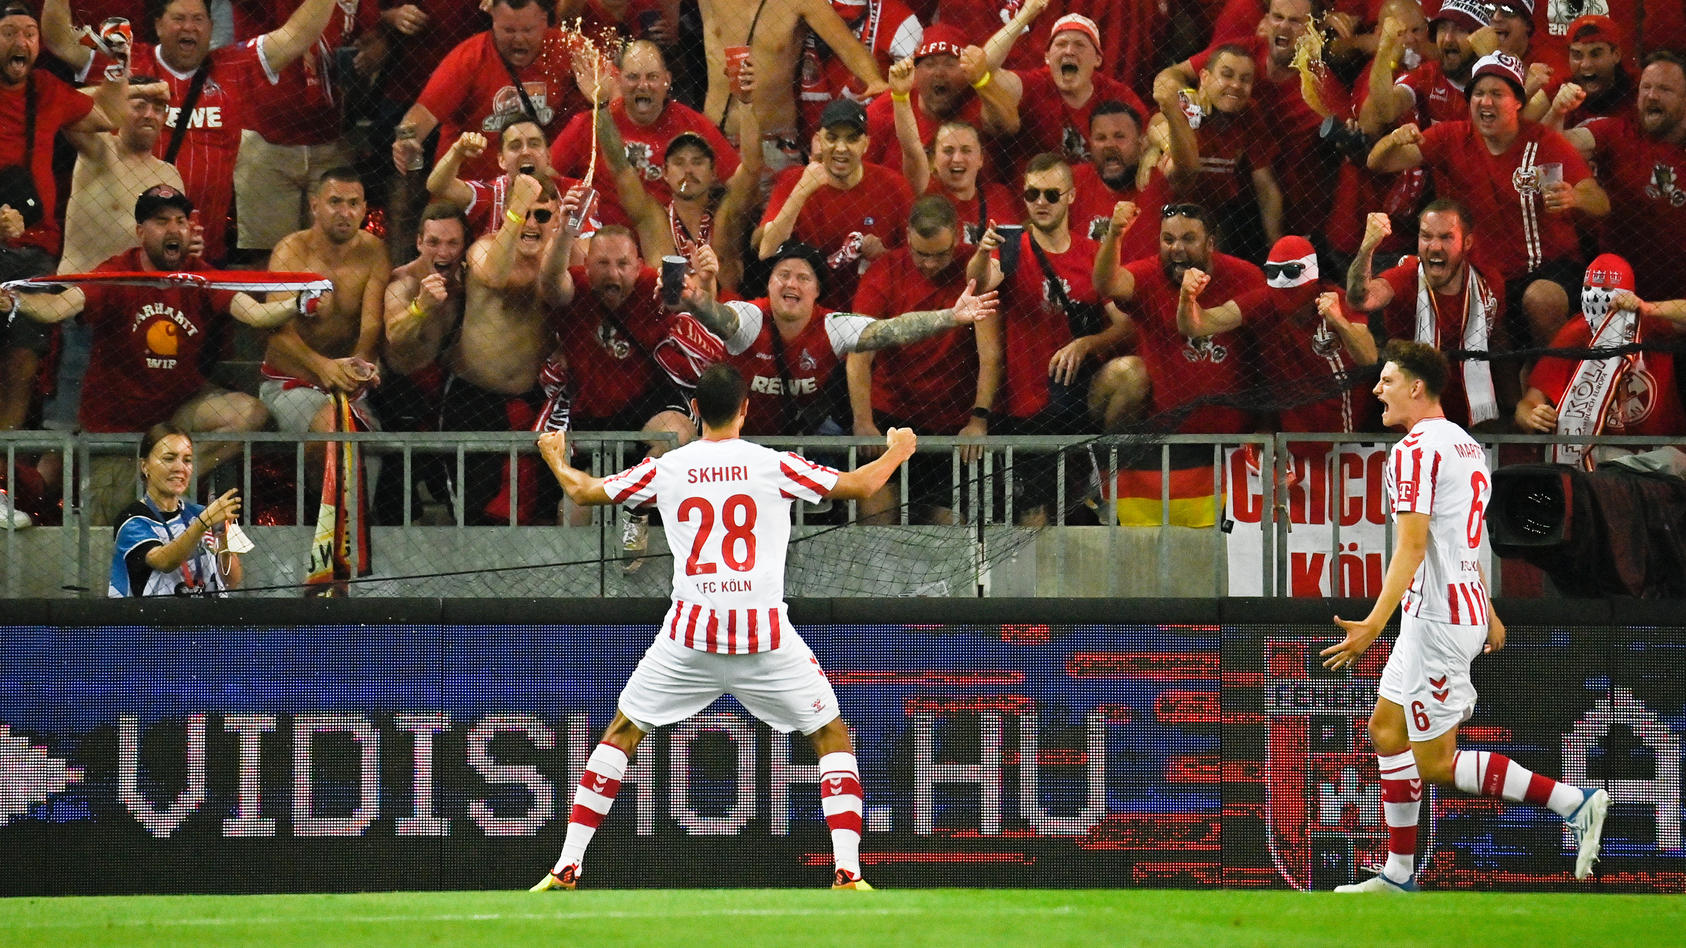 El centrocampista del Colonia Elias Skhiri celebra tras marcar el 2-0 en el play-off de la UEFA League